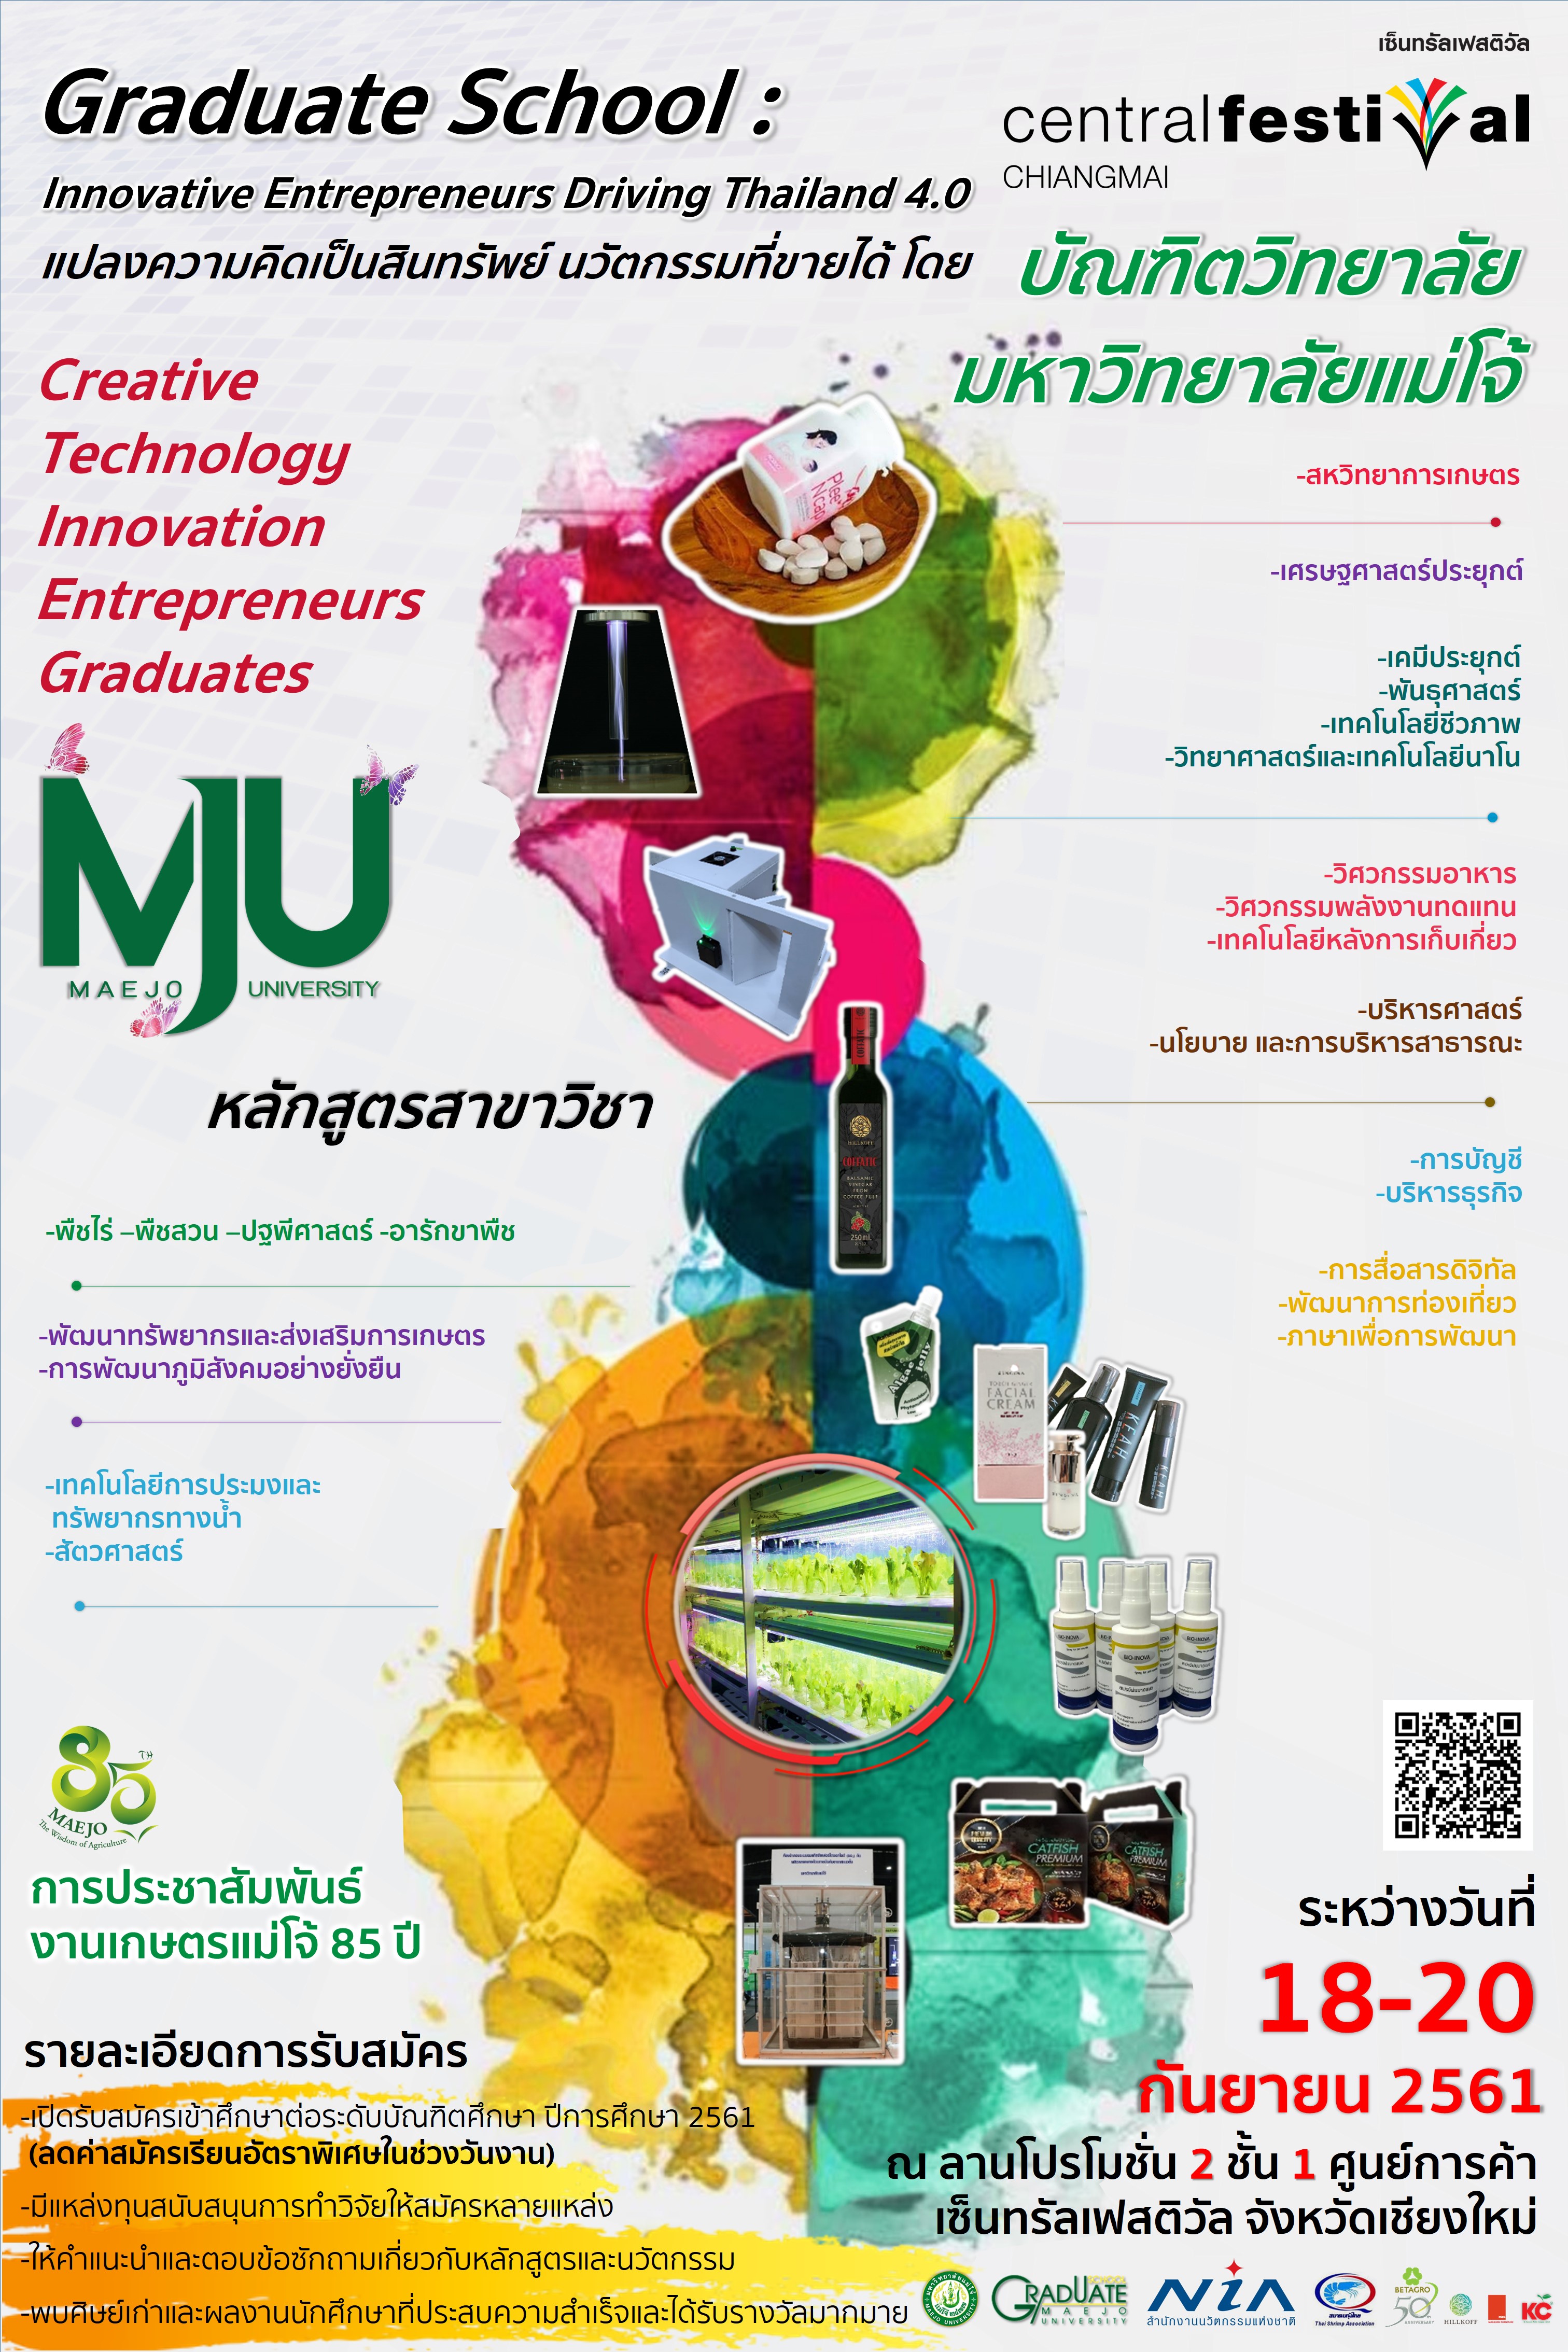 เชียงใหม่  ///  บัณฑิตวิทยาลัย มหาวิทยาลัยแม่โจ้  จัดแสดงผลงานหลักสูตร และนวัตกรรมบัณฑิตศึกษา “Graduate School: Innovative Entrepreneurs Driving Thailand 4.0”  ระหว่างวันที่ 18-20 กันยายน 2561 ณ ลานโปรโมชั่น 2 ชั้น 1 ศูนย์การค้าเซ็นทรัลเฟสติวัล เชียงใหม่